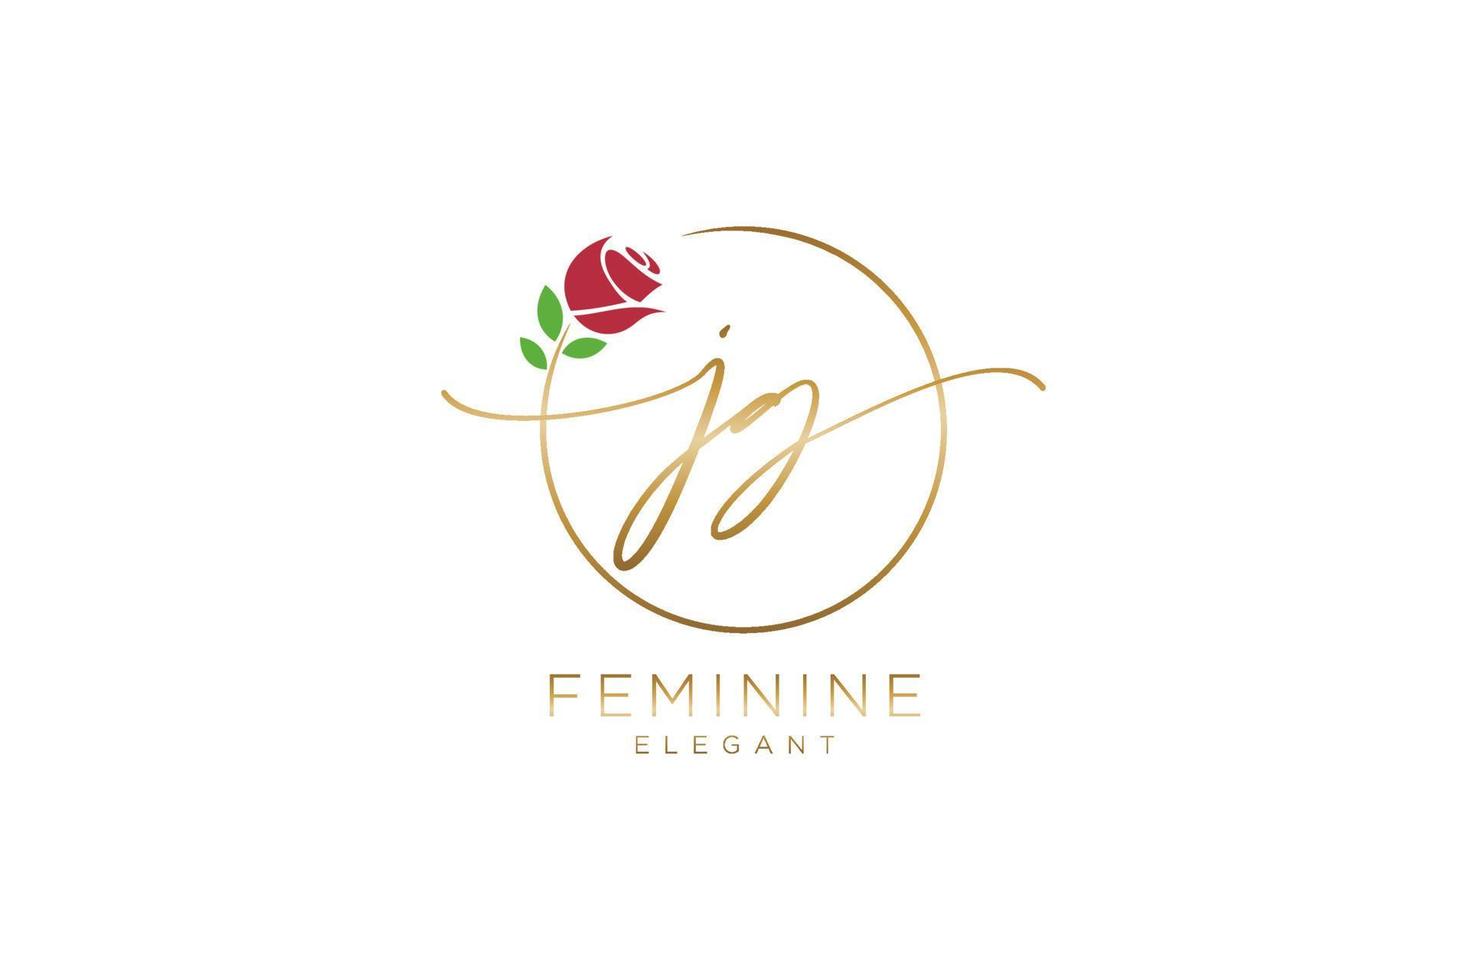 monogramme de beauté du logo féminin jg initial et design élégant du logo, logo manuscrit de la signature initiale, mariage, mode, floral et botanique avec modèle créatif. vecteur